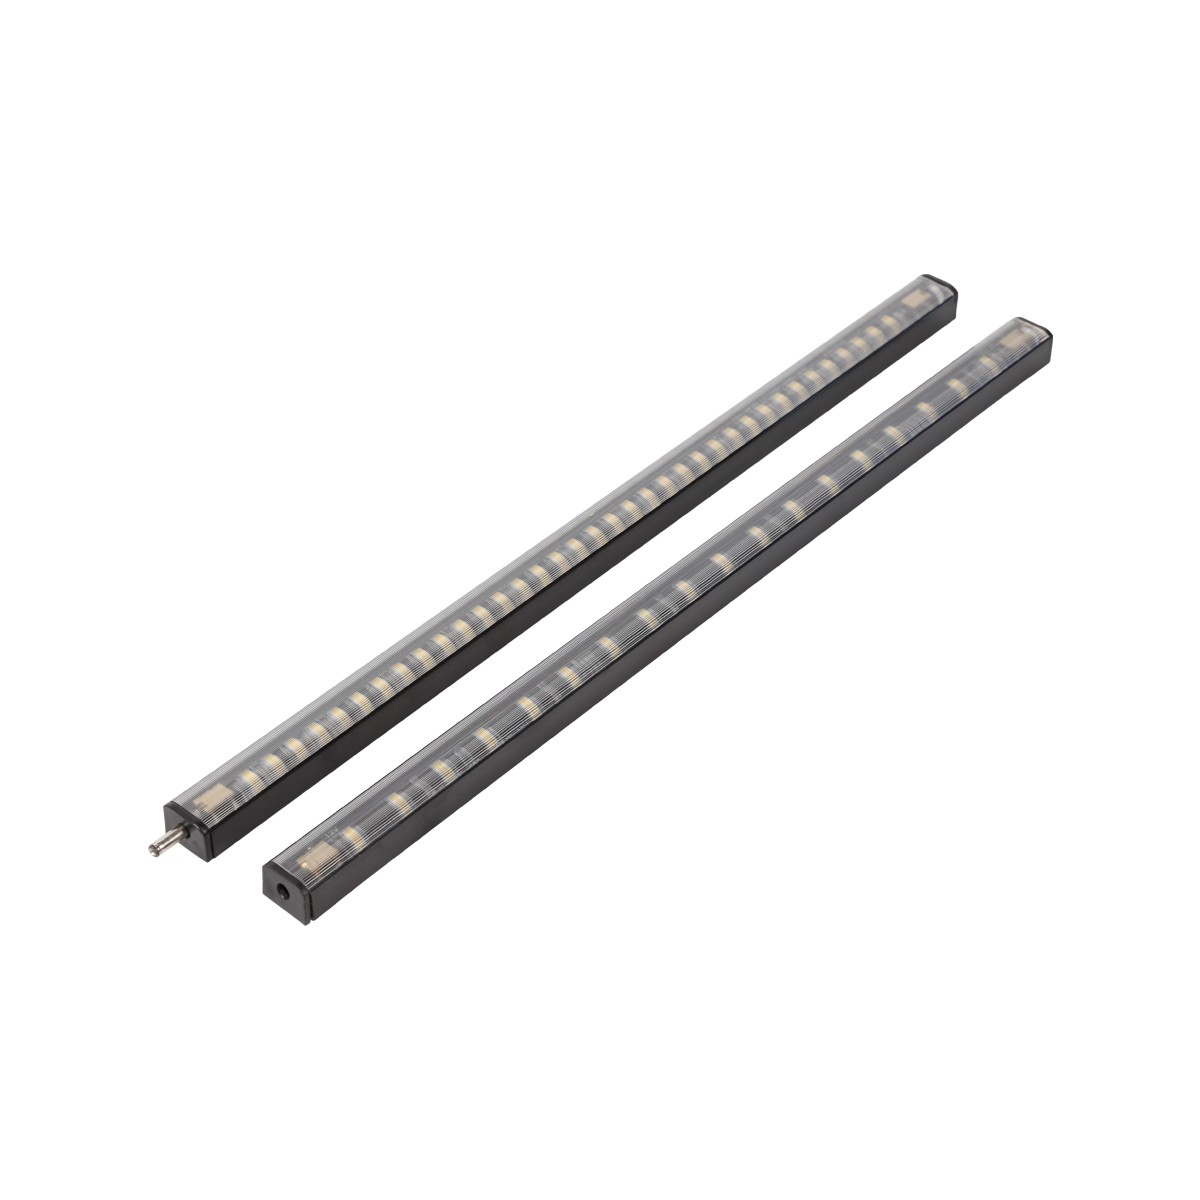 Set of LED hard light bars, safe light bars, low voltage 12V seamless connection with LED light bars